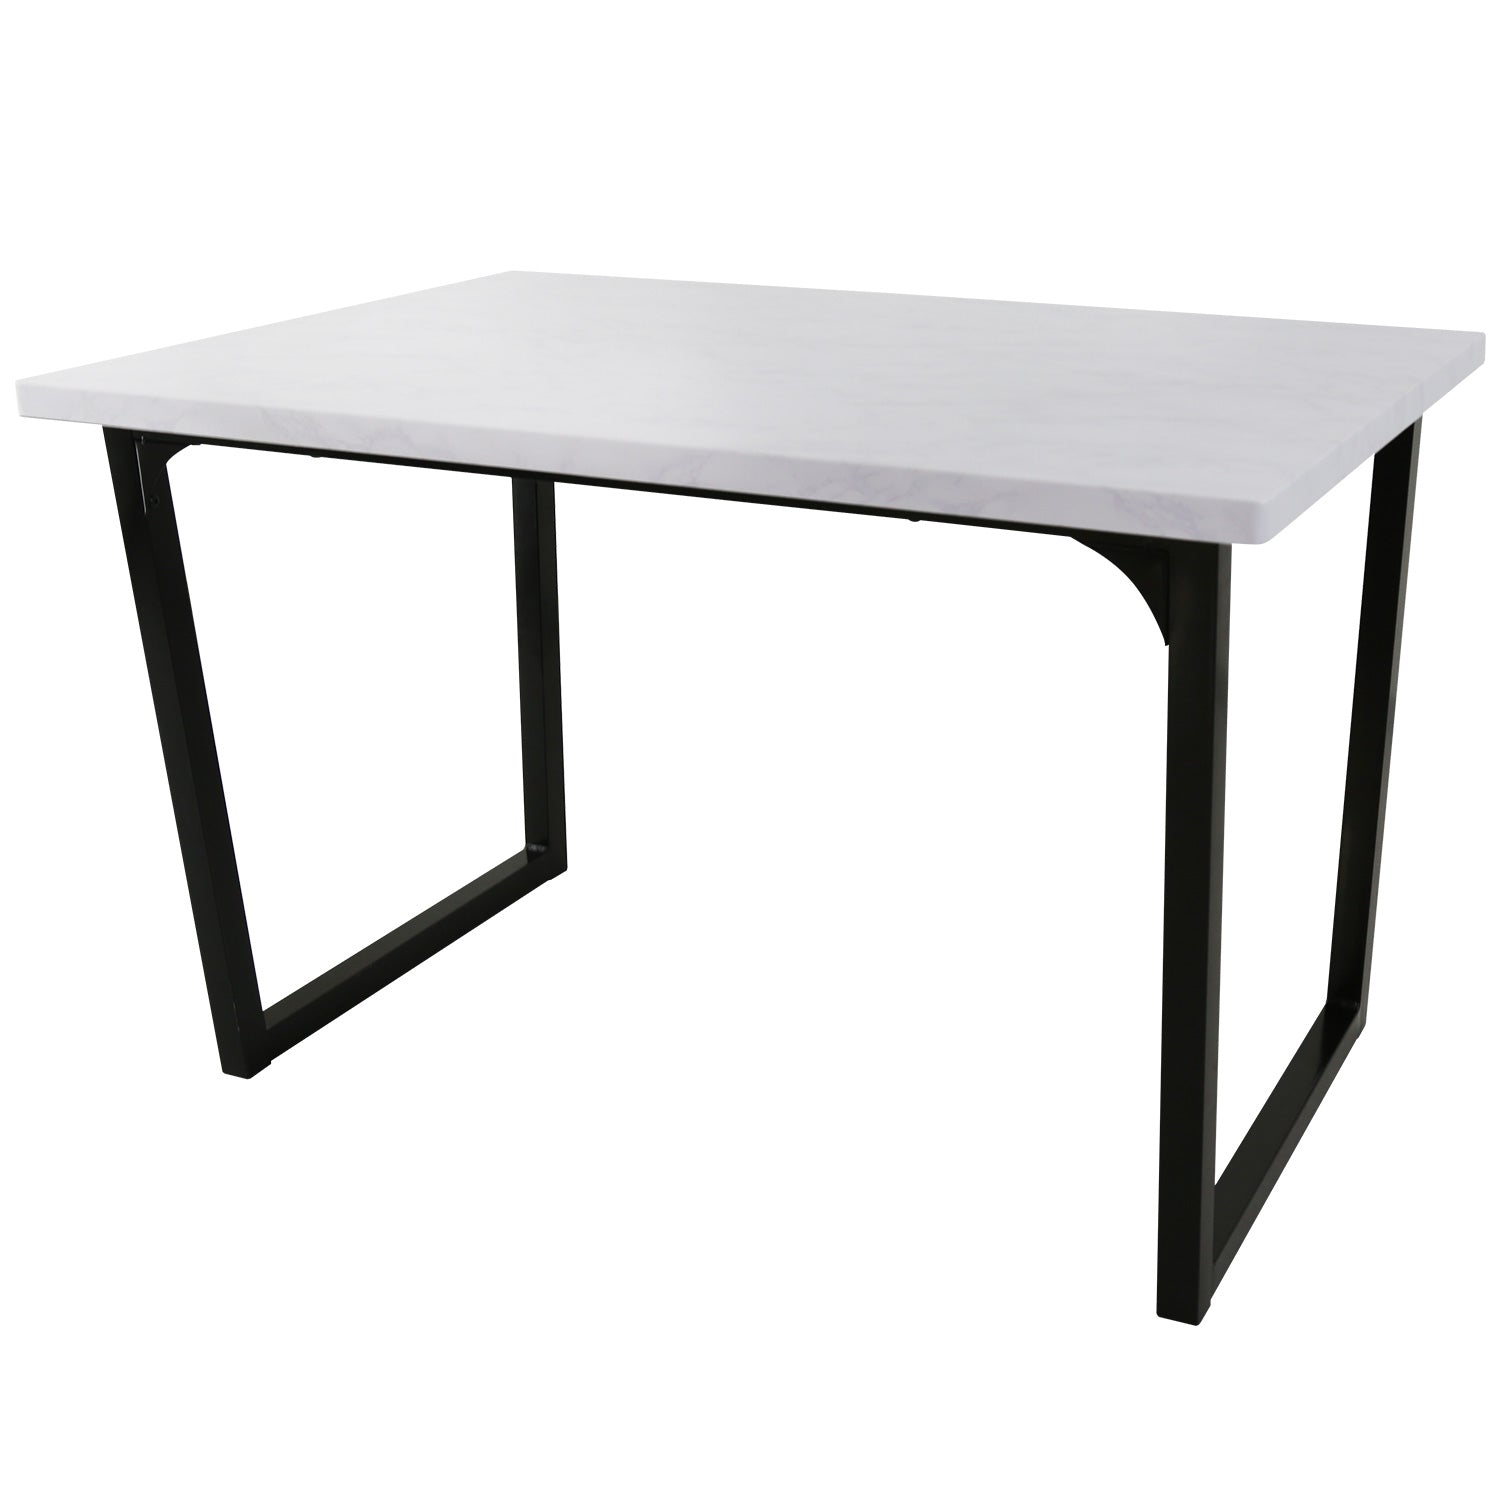 Counter Table 120 iron leg white